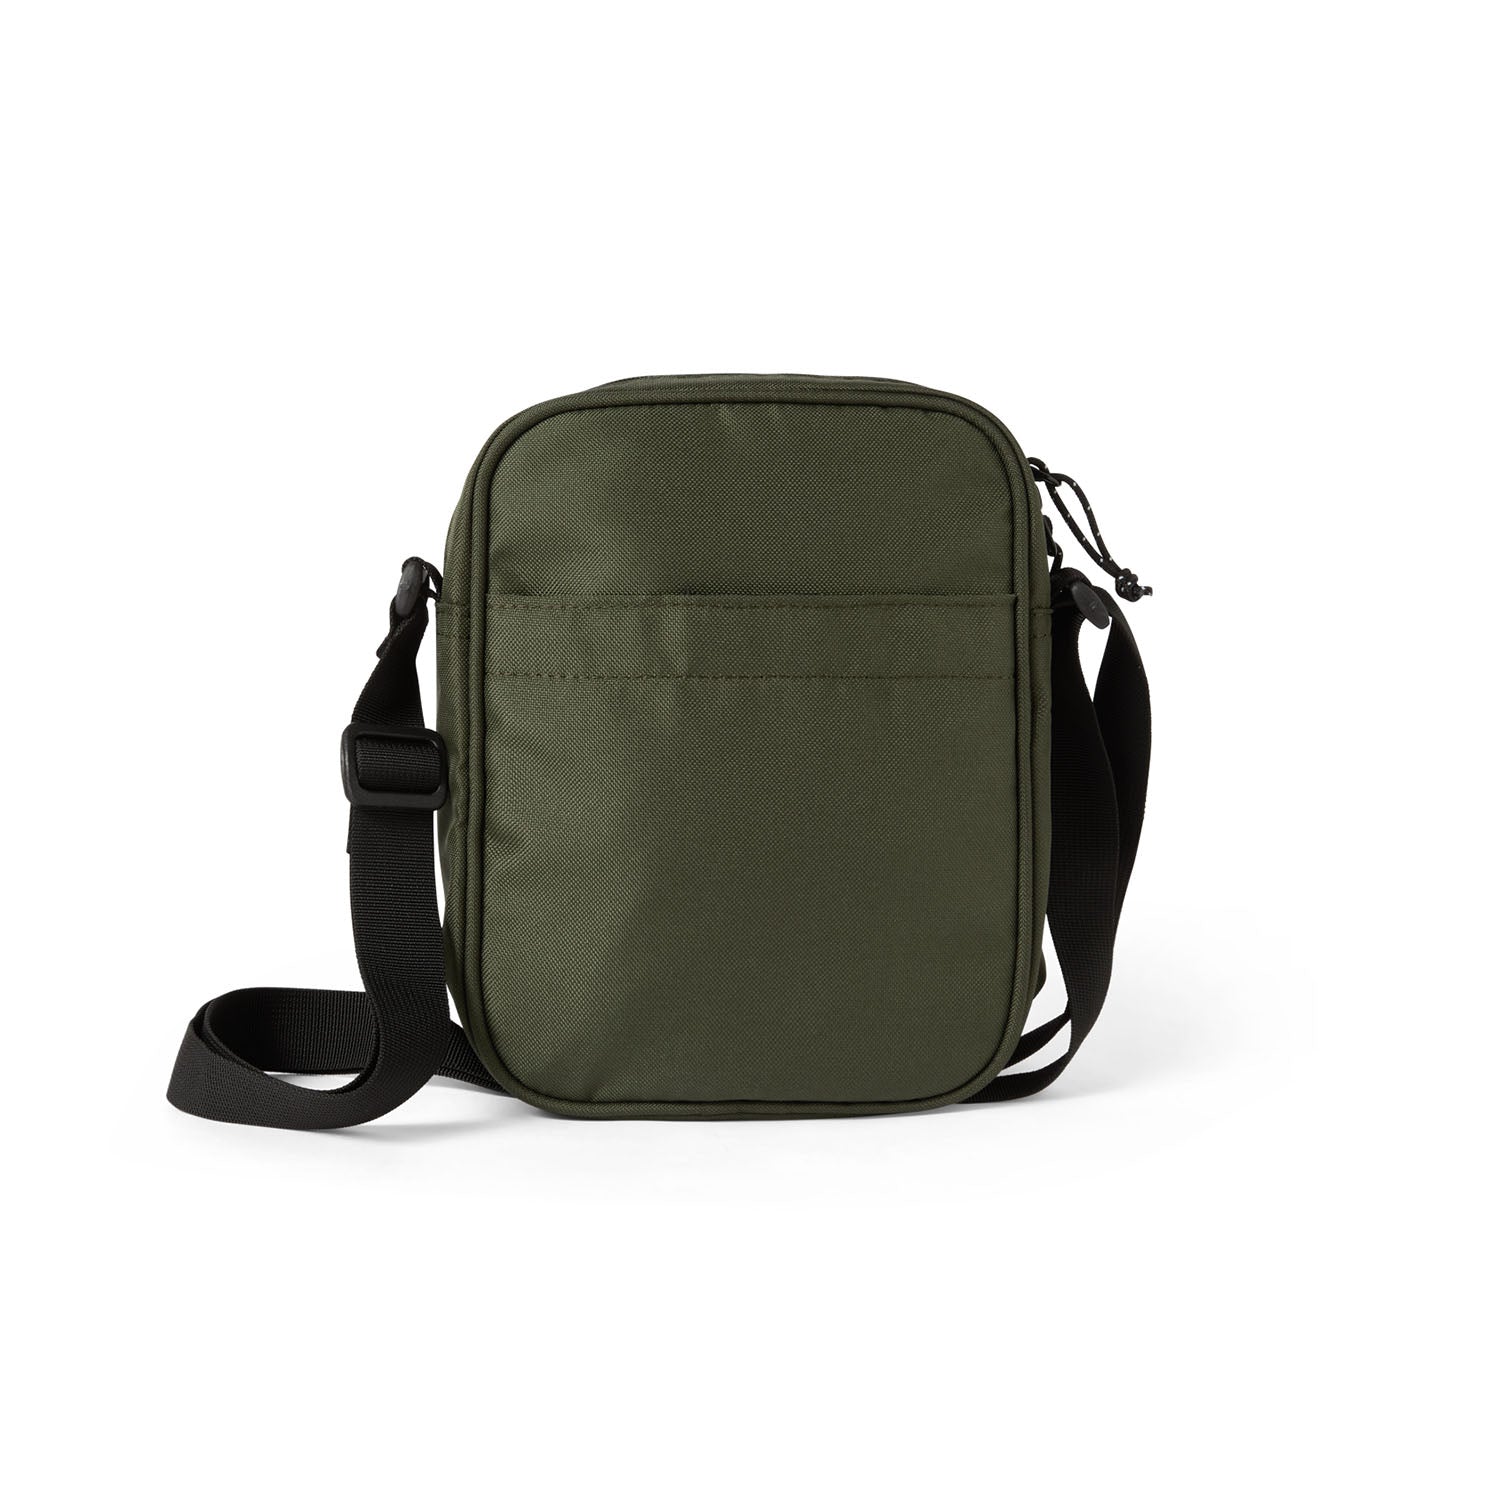 Cordura Dealer Bag, Army Green